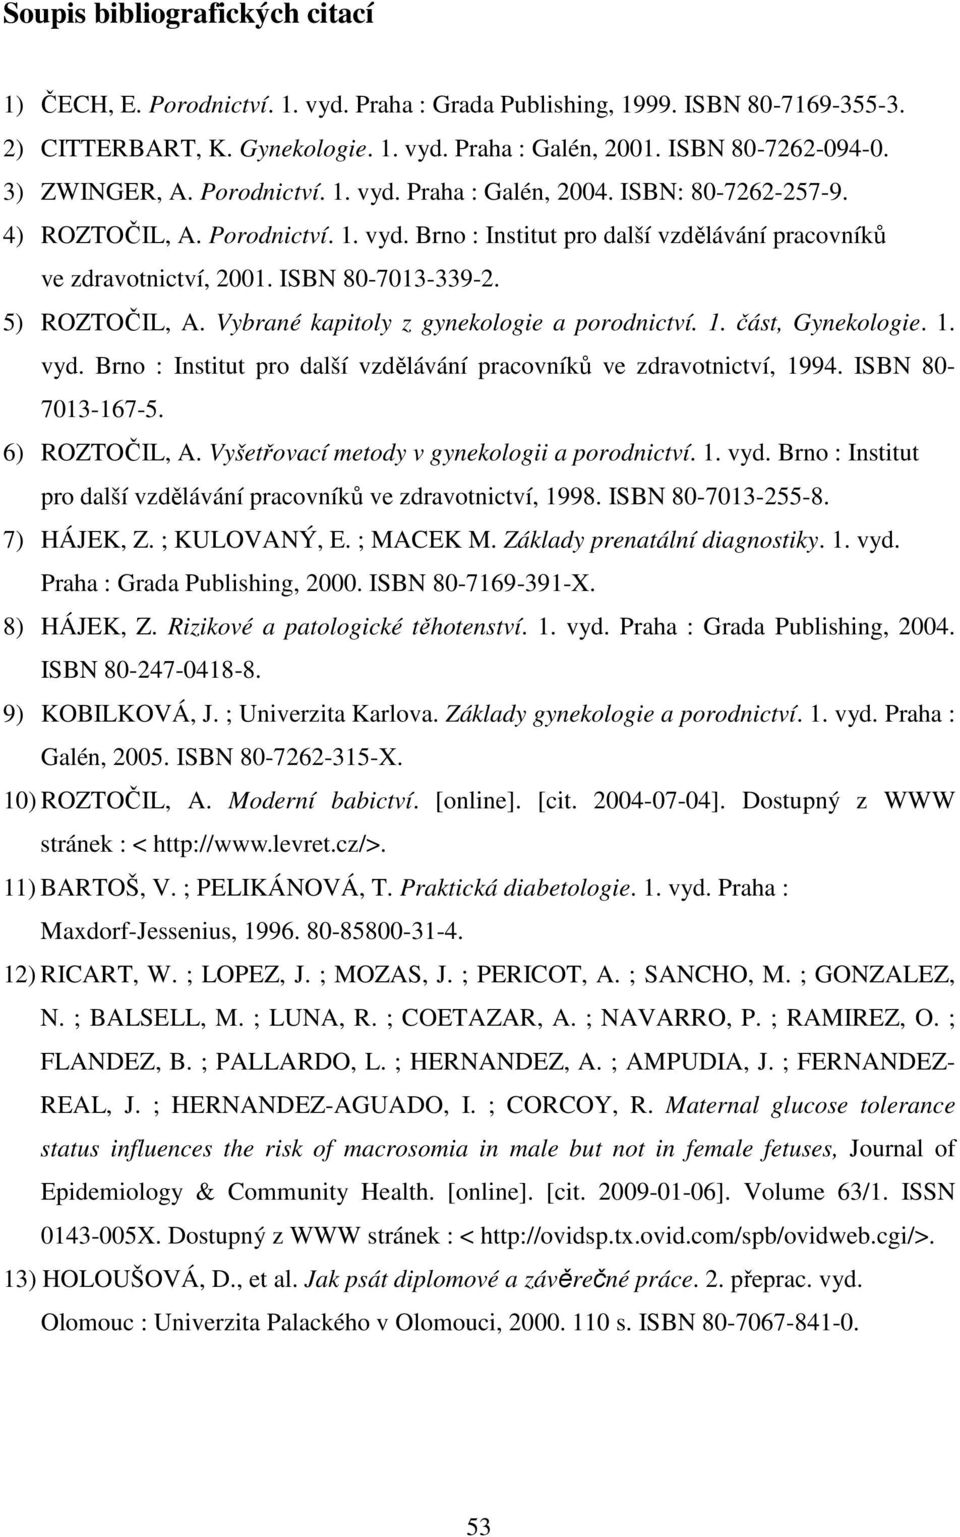 ISBN 80-7013-339-2. 5) ROZTOČIL, A. Vybrané kapitoly z gynekologie a porodnictví. 1. část, Gynekologie. 1. vyd. Brno : Institut pro další vzdělávání pracovníků ve zdravotnictví, 1994.